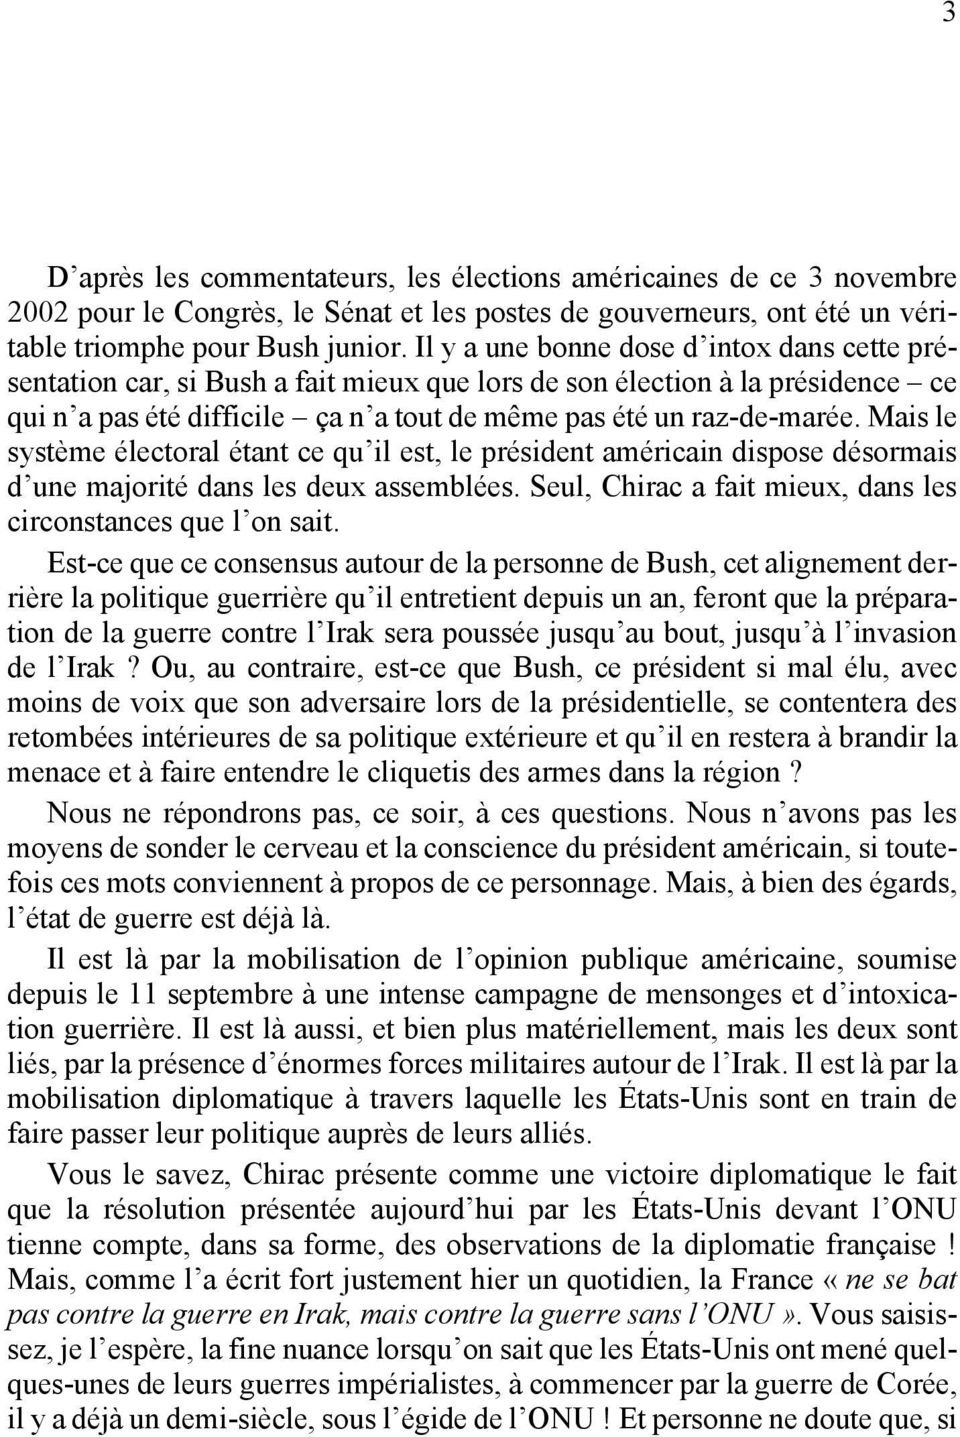 Mais le système électoral étant ce qu il est, le président américain dispose désormais d une majorité dans les deux assemblées. Seul, Chirac a fait mieux, dans les circonstances que l on sait.